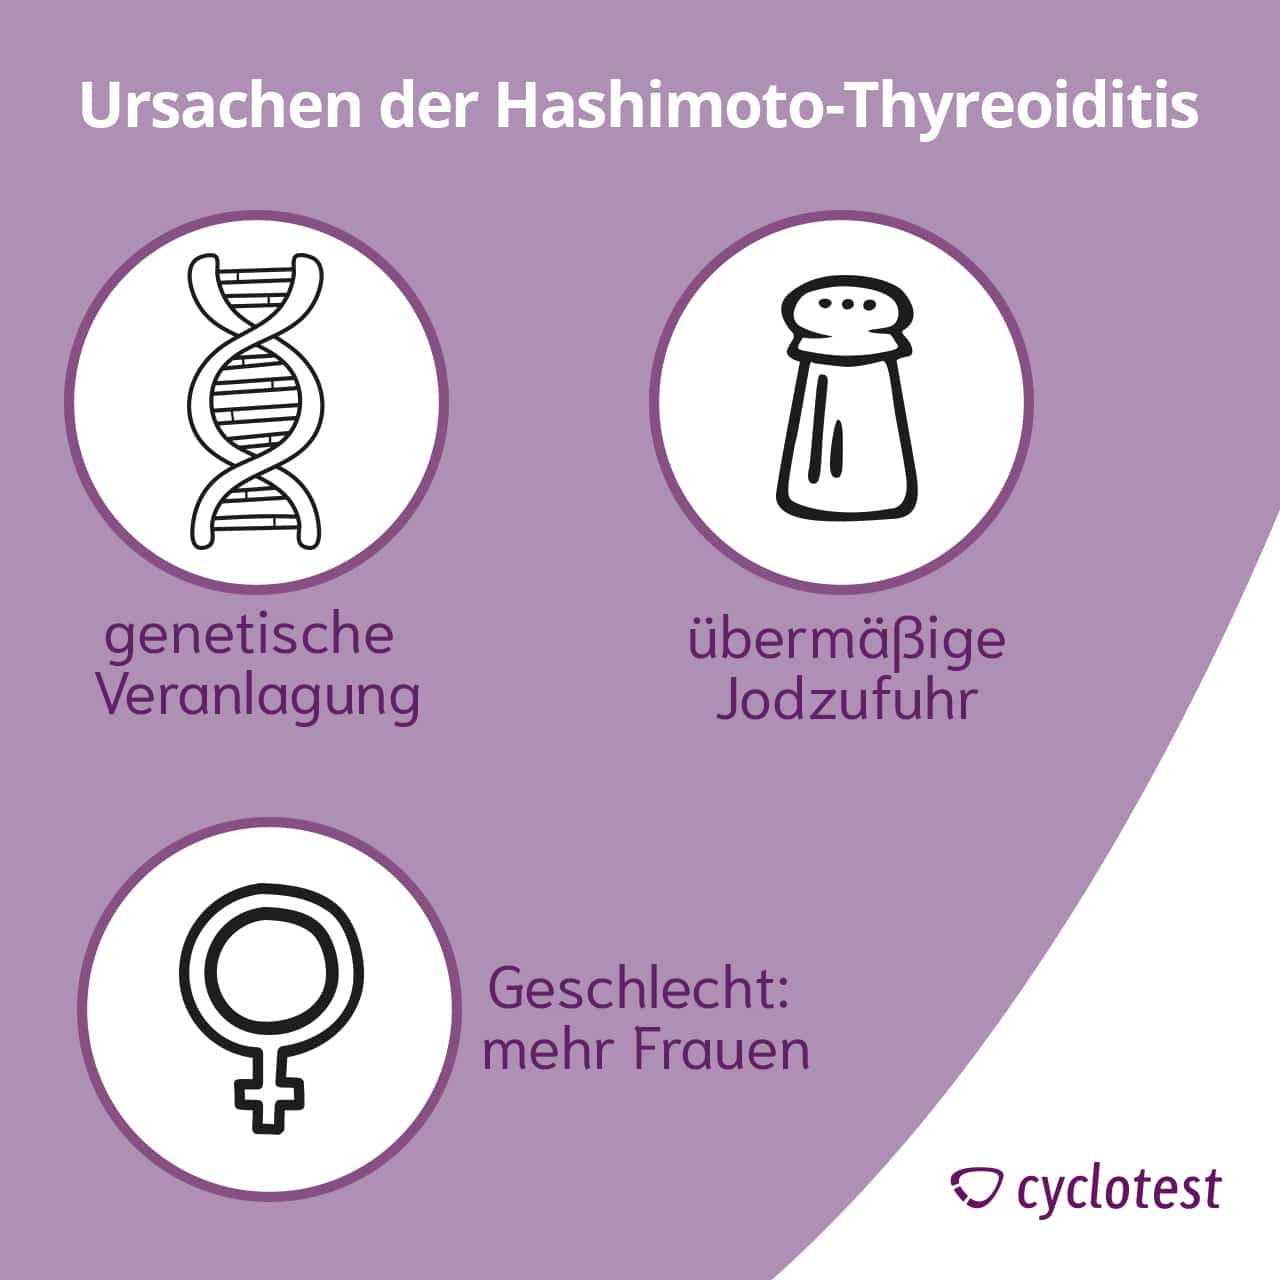 Die drei häufigsten Ursachen der Hashimoto-Thyreoiditis..